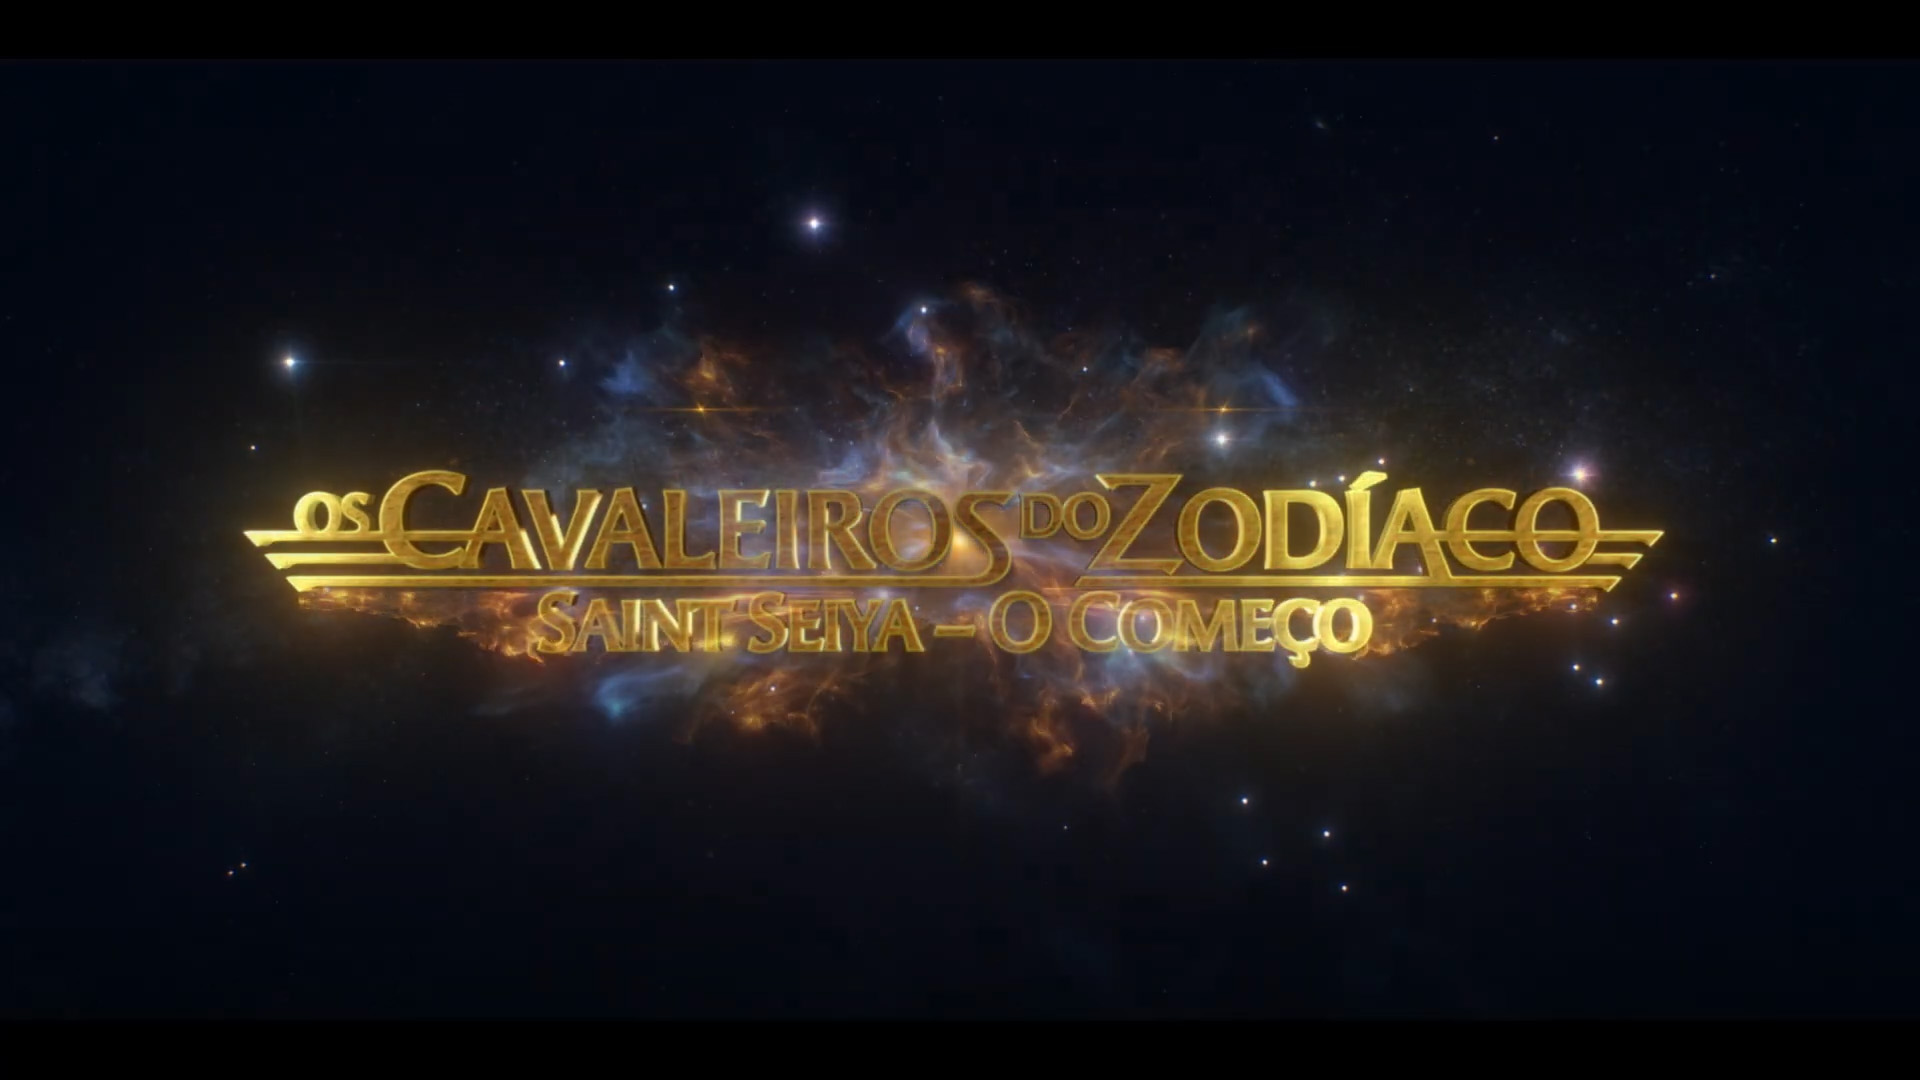 Filme de Cavaleiros do Zodíaco chegará ao Brasil! Veja trailer dublado